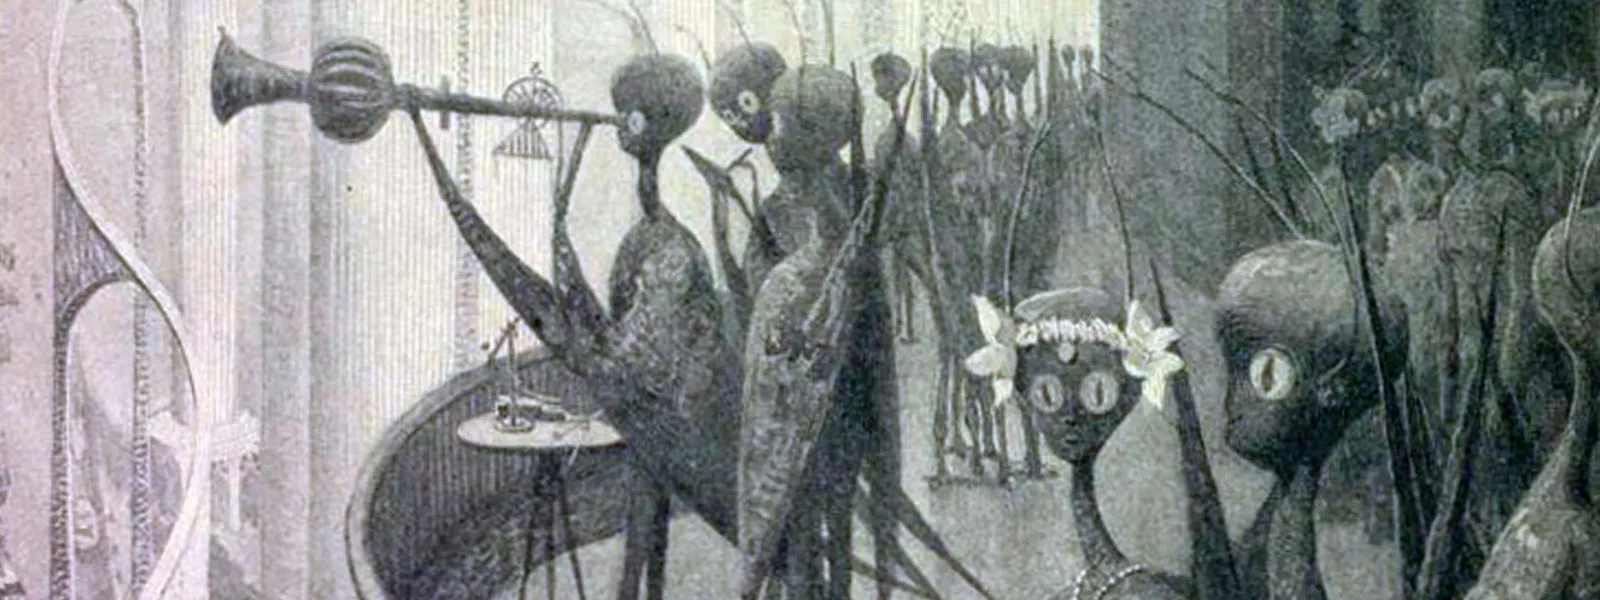 Иллюстрации к статье Г. Г. Уэллса под названием "Существа, которые живут на Марсе"